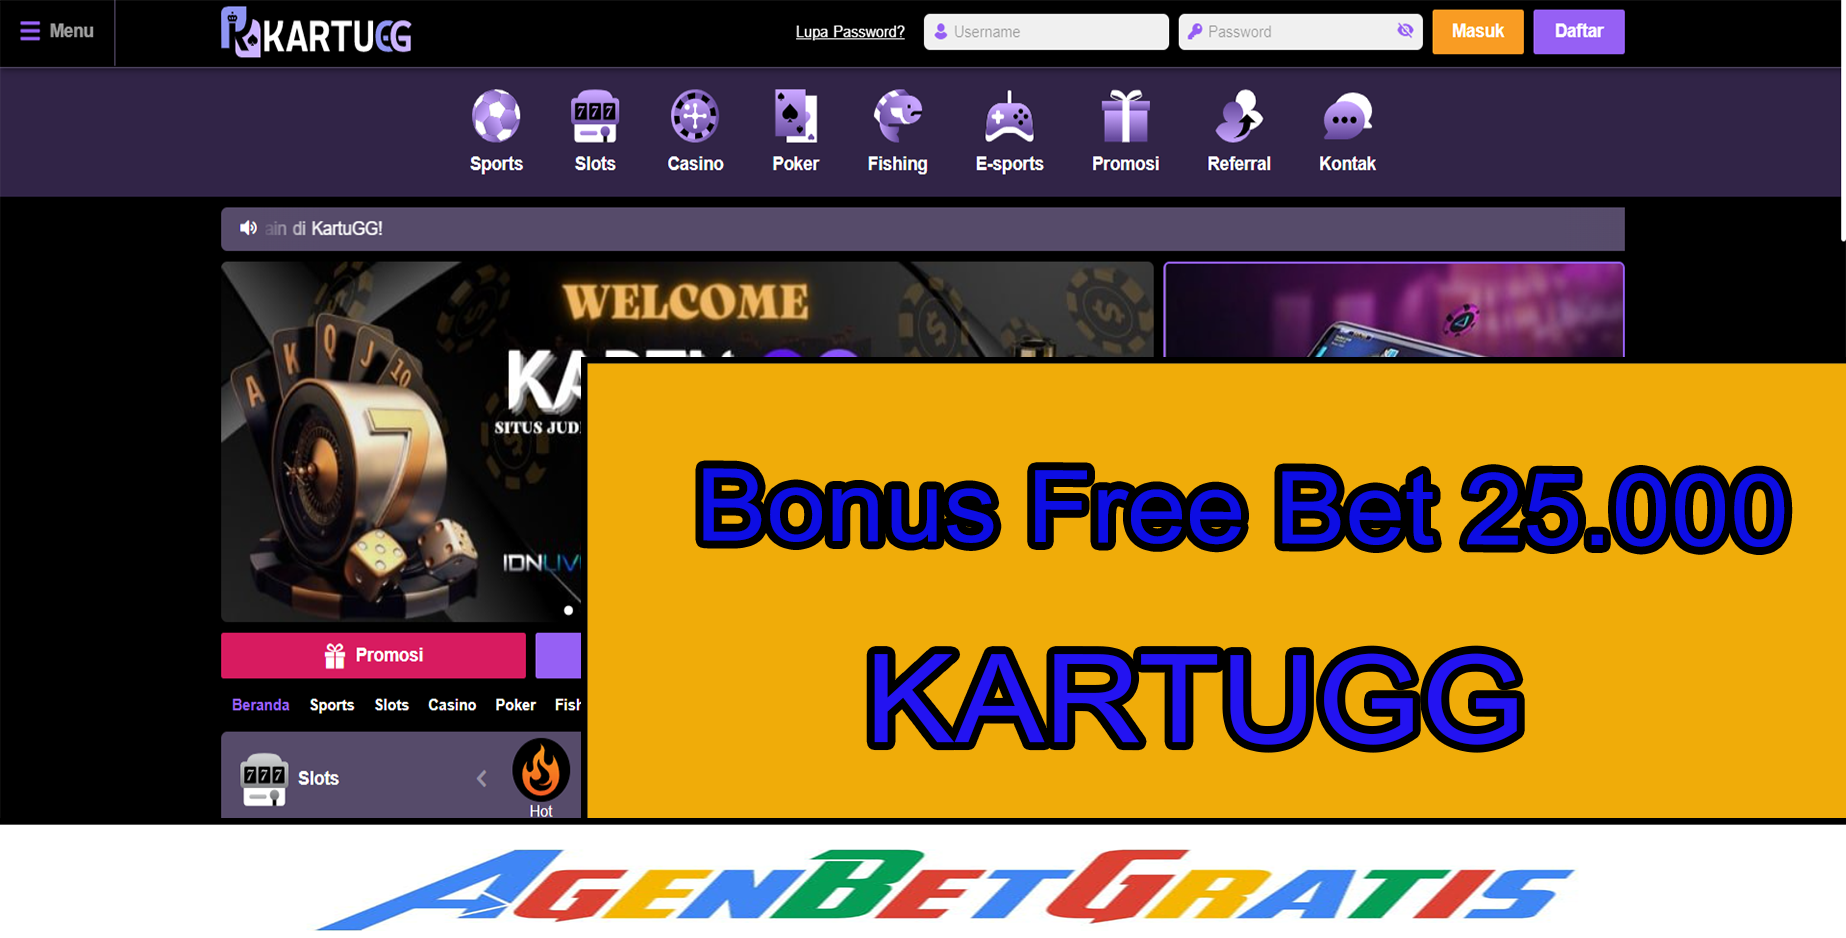 KARTUGG - Bonus FreeBet 25.000